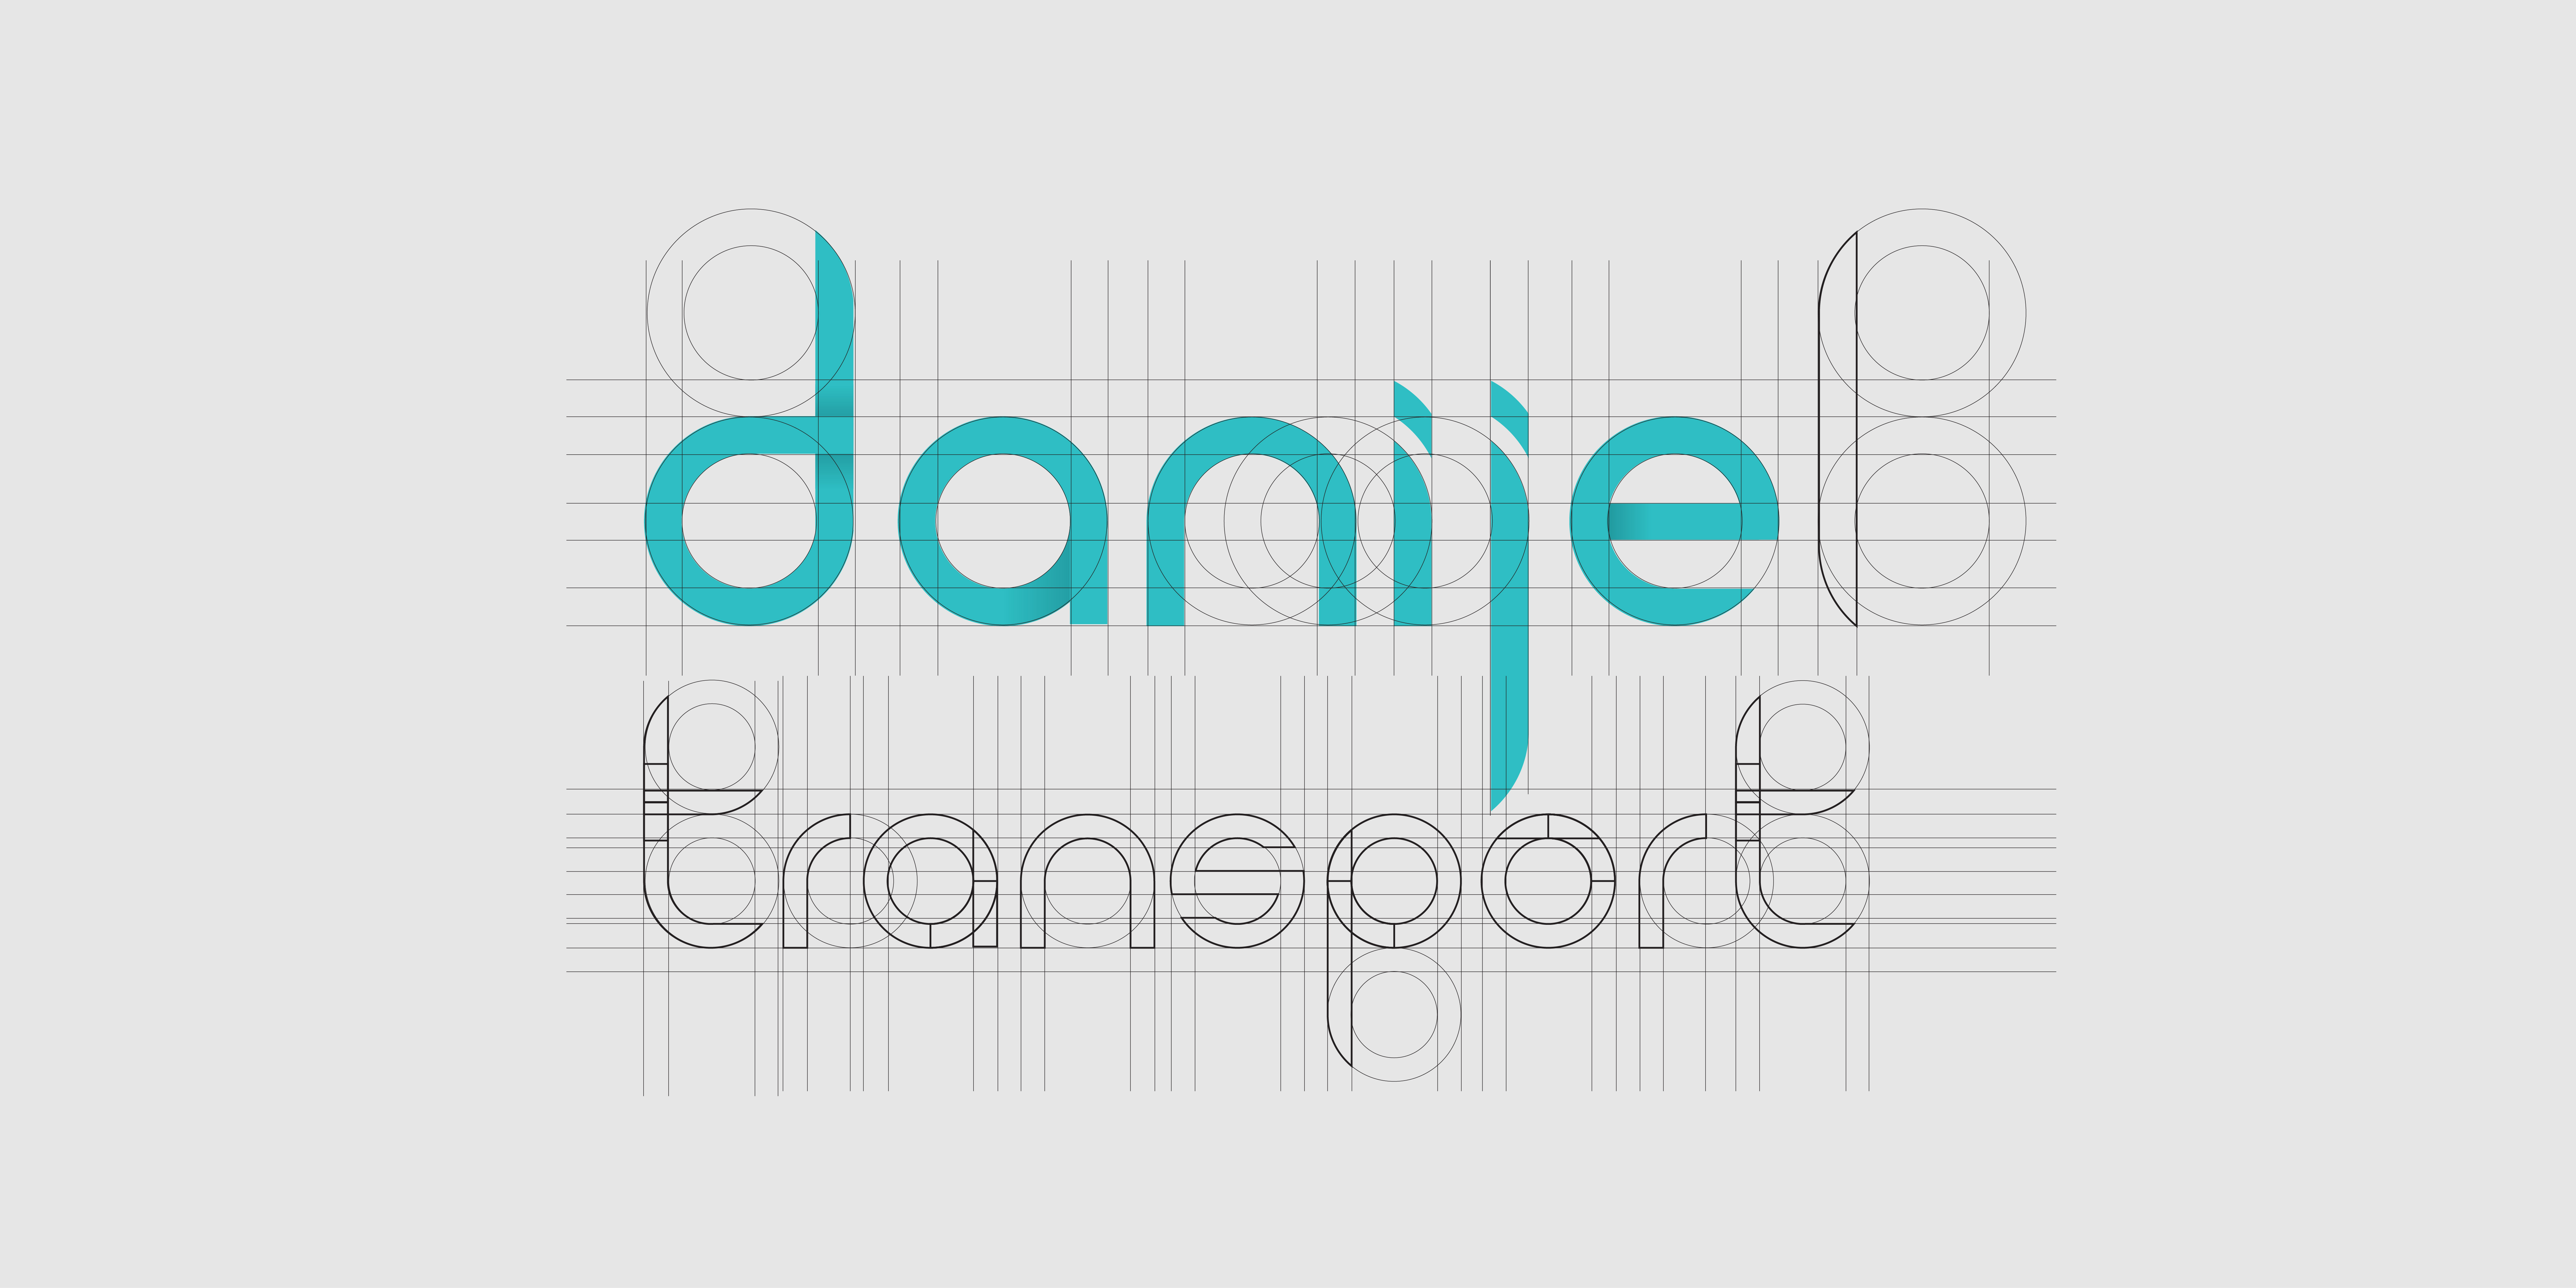 Danijel Transport